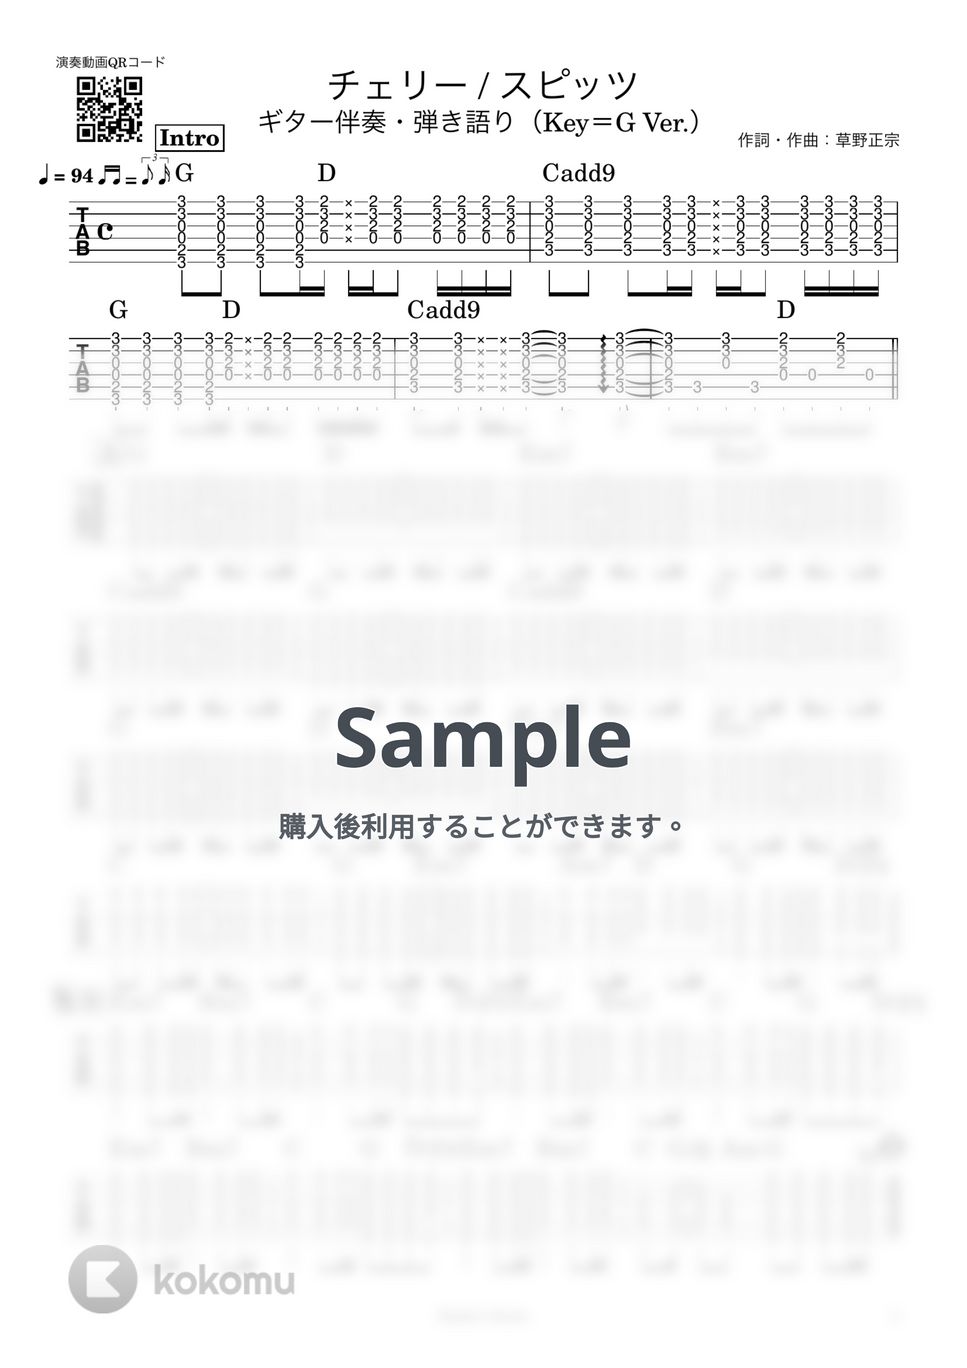 スピッツ - チェリー / スピッツ / 福山雅治 / Key=G Ver.【ギター伴奏・弾き語り】 (ギター伴奏・弾き語り) by Sinho